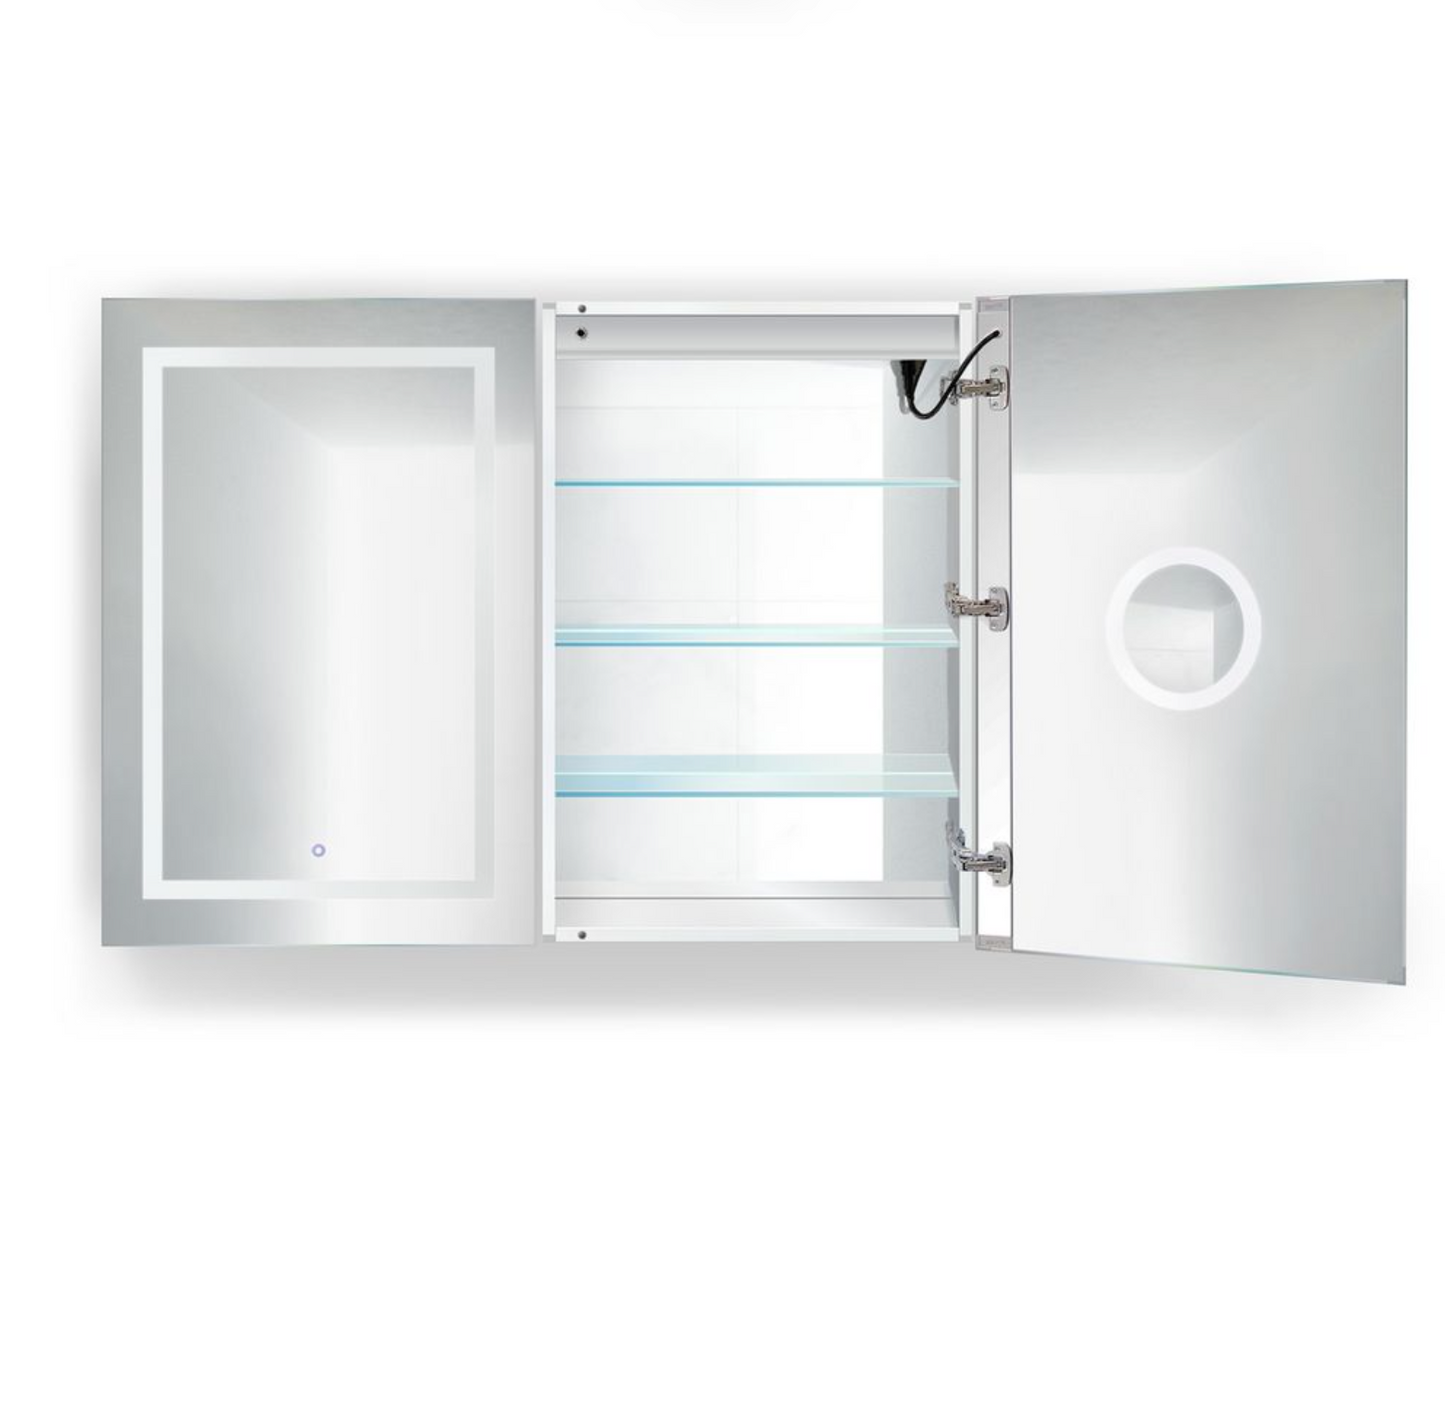 SVANGE 48 X 36 LED Lighted Mirror Medicine Cabinet, Defogger included, 2 & 3 Door Options